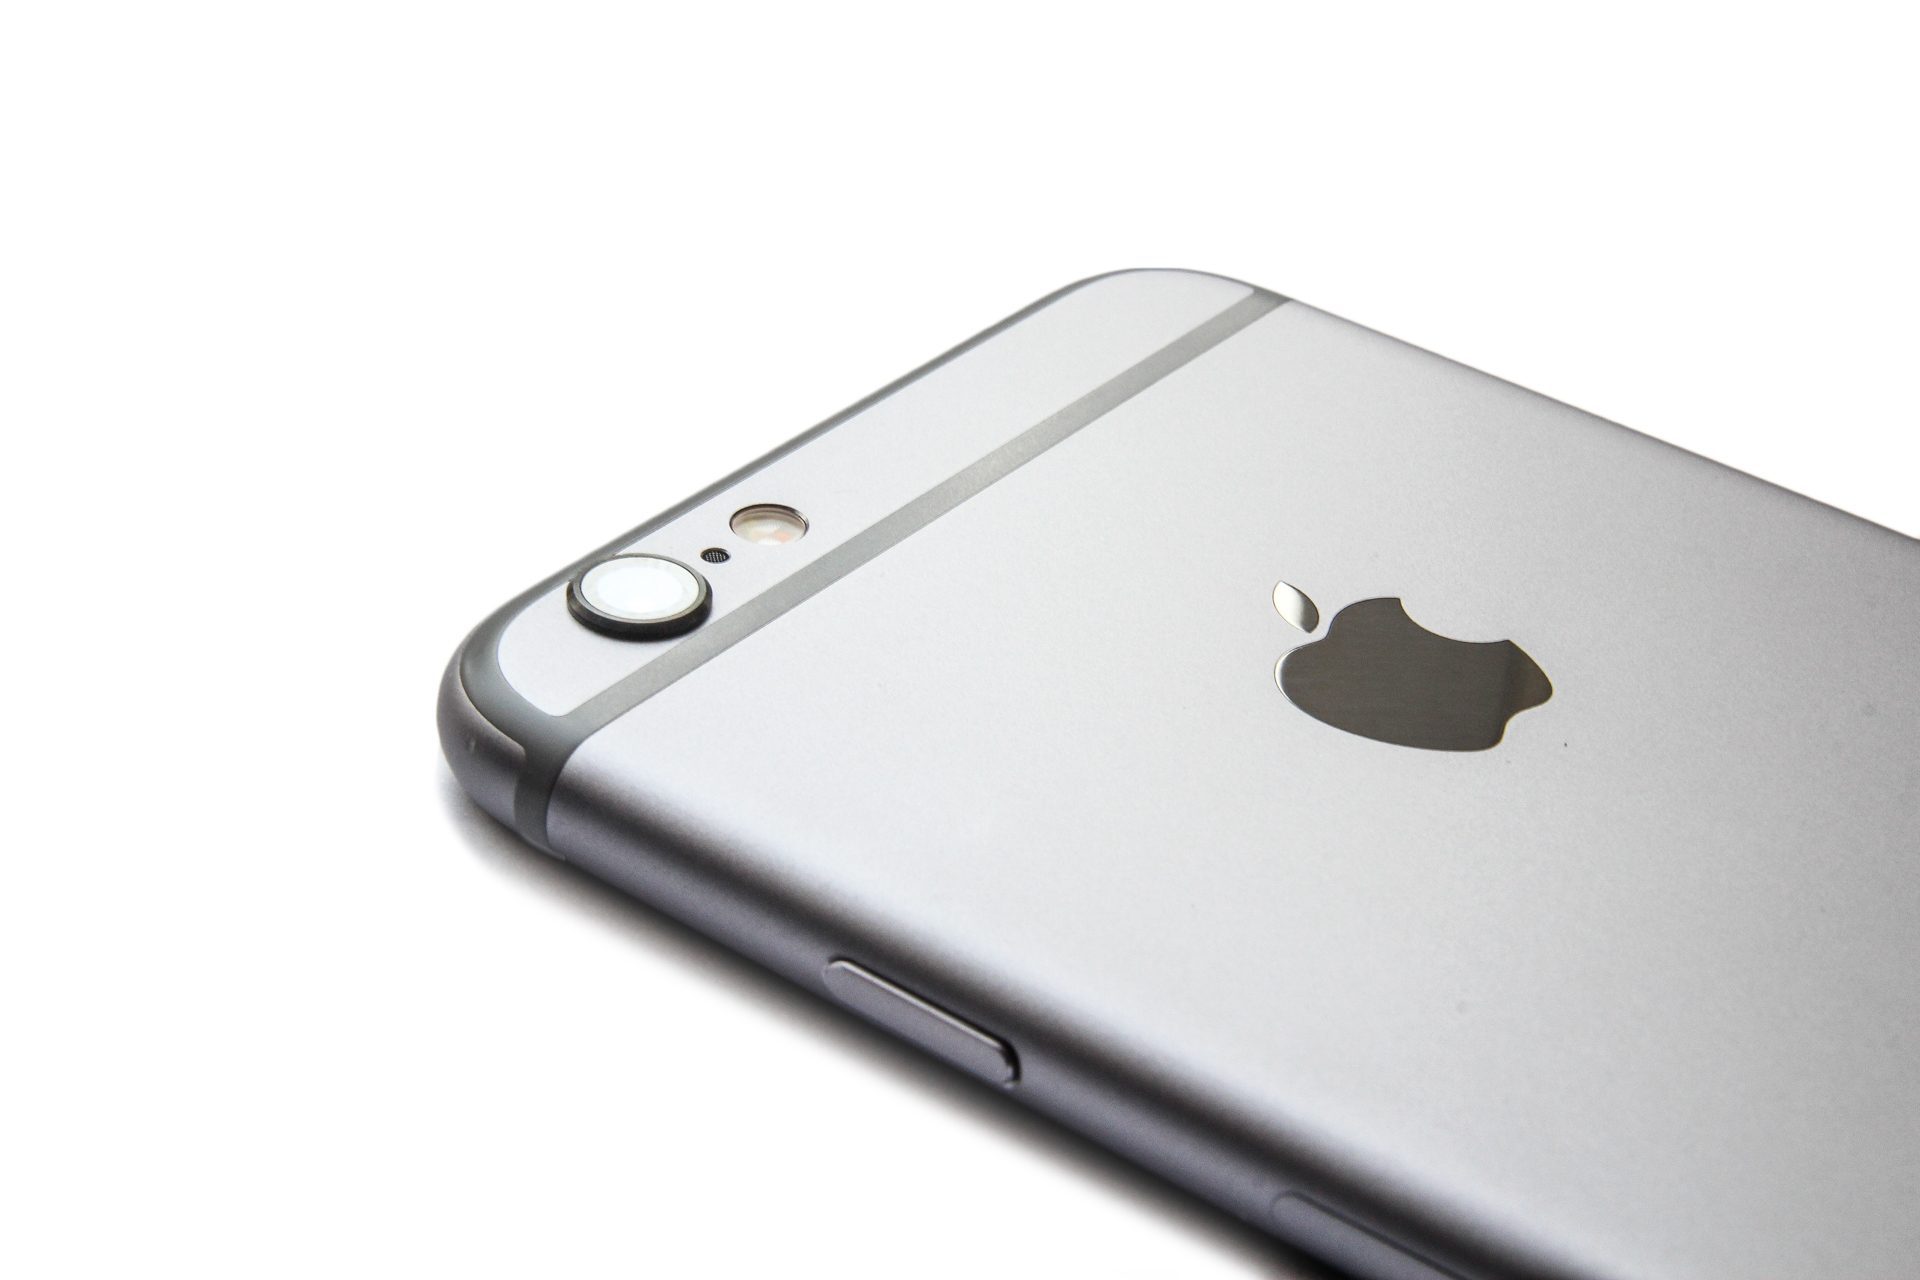 Onderdrukking Ijver Kast iPhone 6 kopen met abonnement, prijzen en aanbiedingen vergelijken